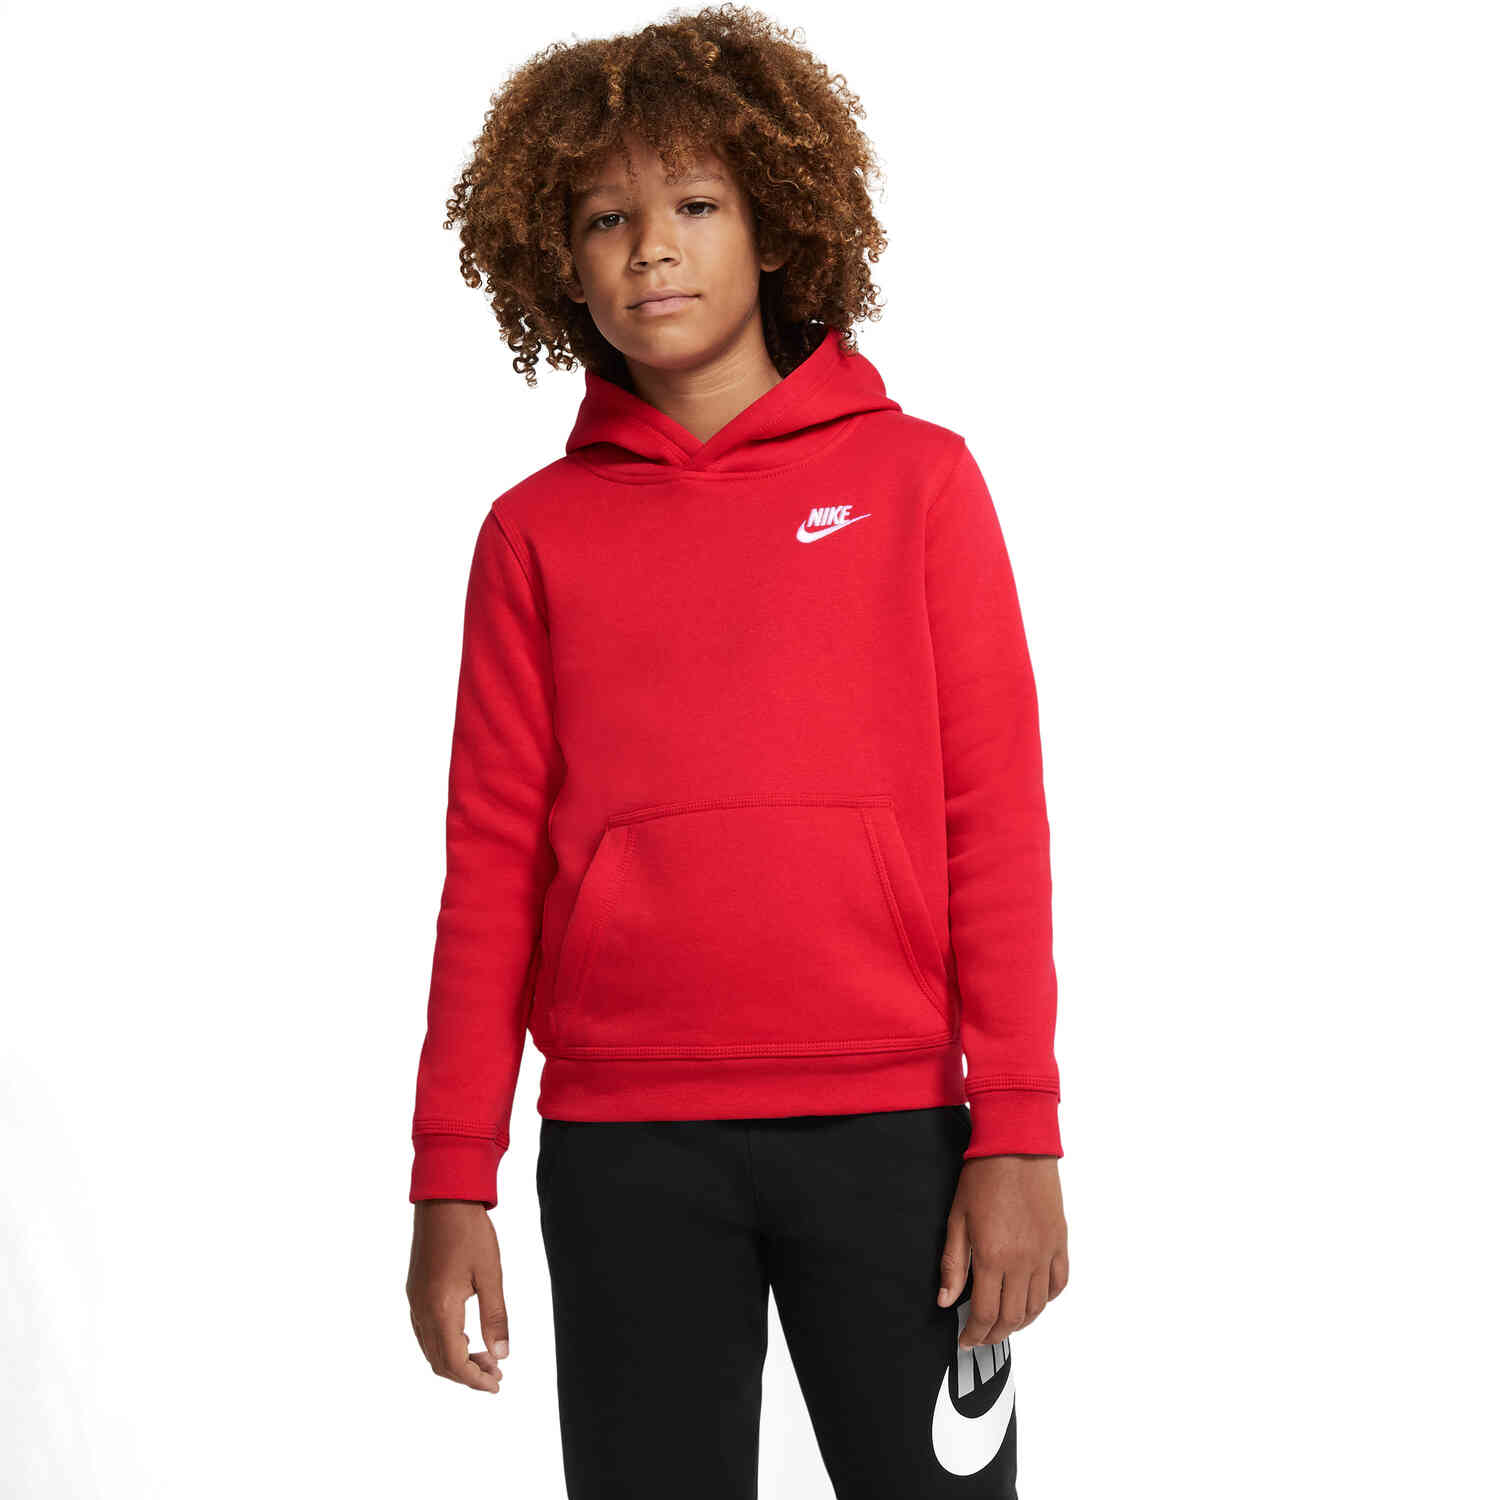 Kids Nike Sportswear Pullover Hoodie - University Red - SoccerPro